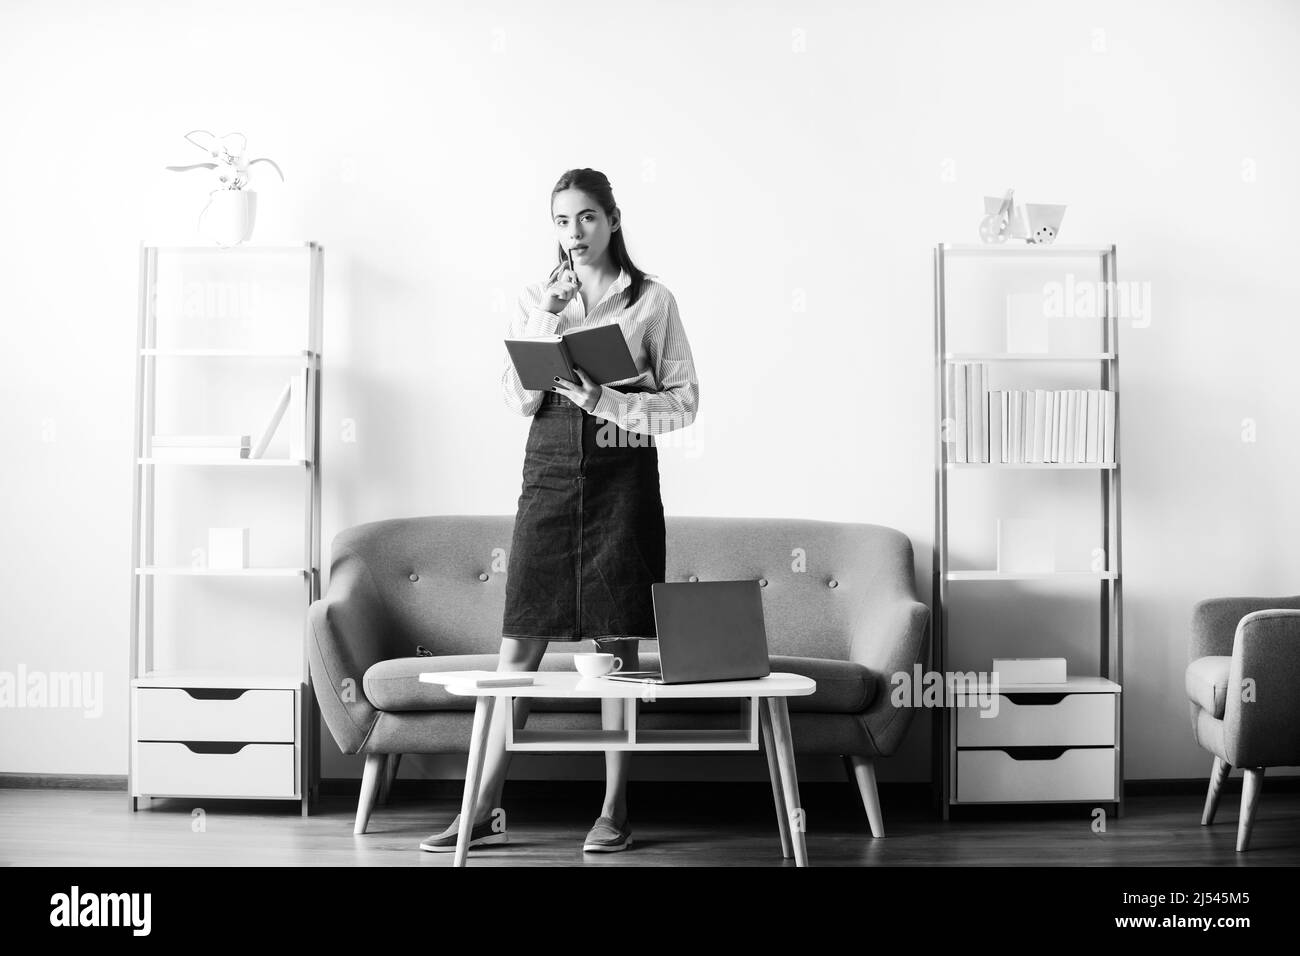 Junge attraktive Sekretärin Frau an einem geschäftigen modernen Arbeitsplatz im Büro. Hübsches Buchhalterin Mädchen am Schreibtisch im Büroinneren. Stockfoto